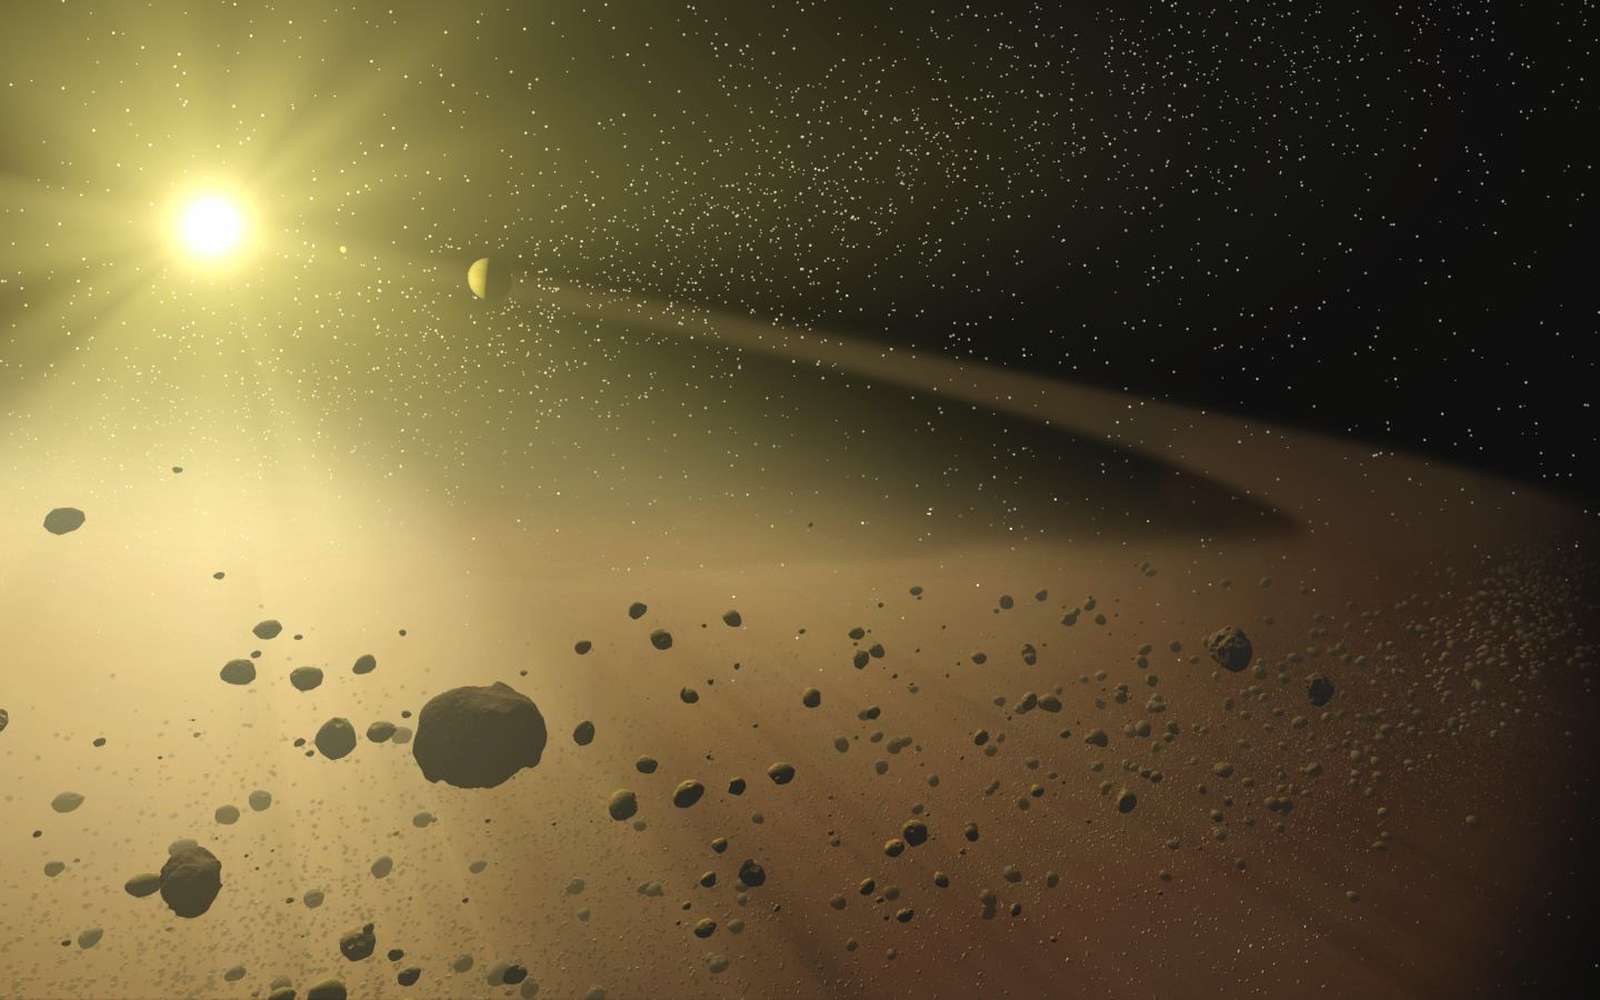 Sans les planètes géantes et gazeuses, les rocheuses proches de l’étoile-parent subiraient des collisions avec des planétésimaux durant plusieurs centaines de millions d’années, voire des milliards d’années, selon des simulations. © Nasa, JPL-Caltech, T. Pyle (SSC)